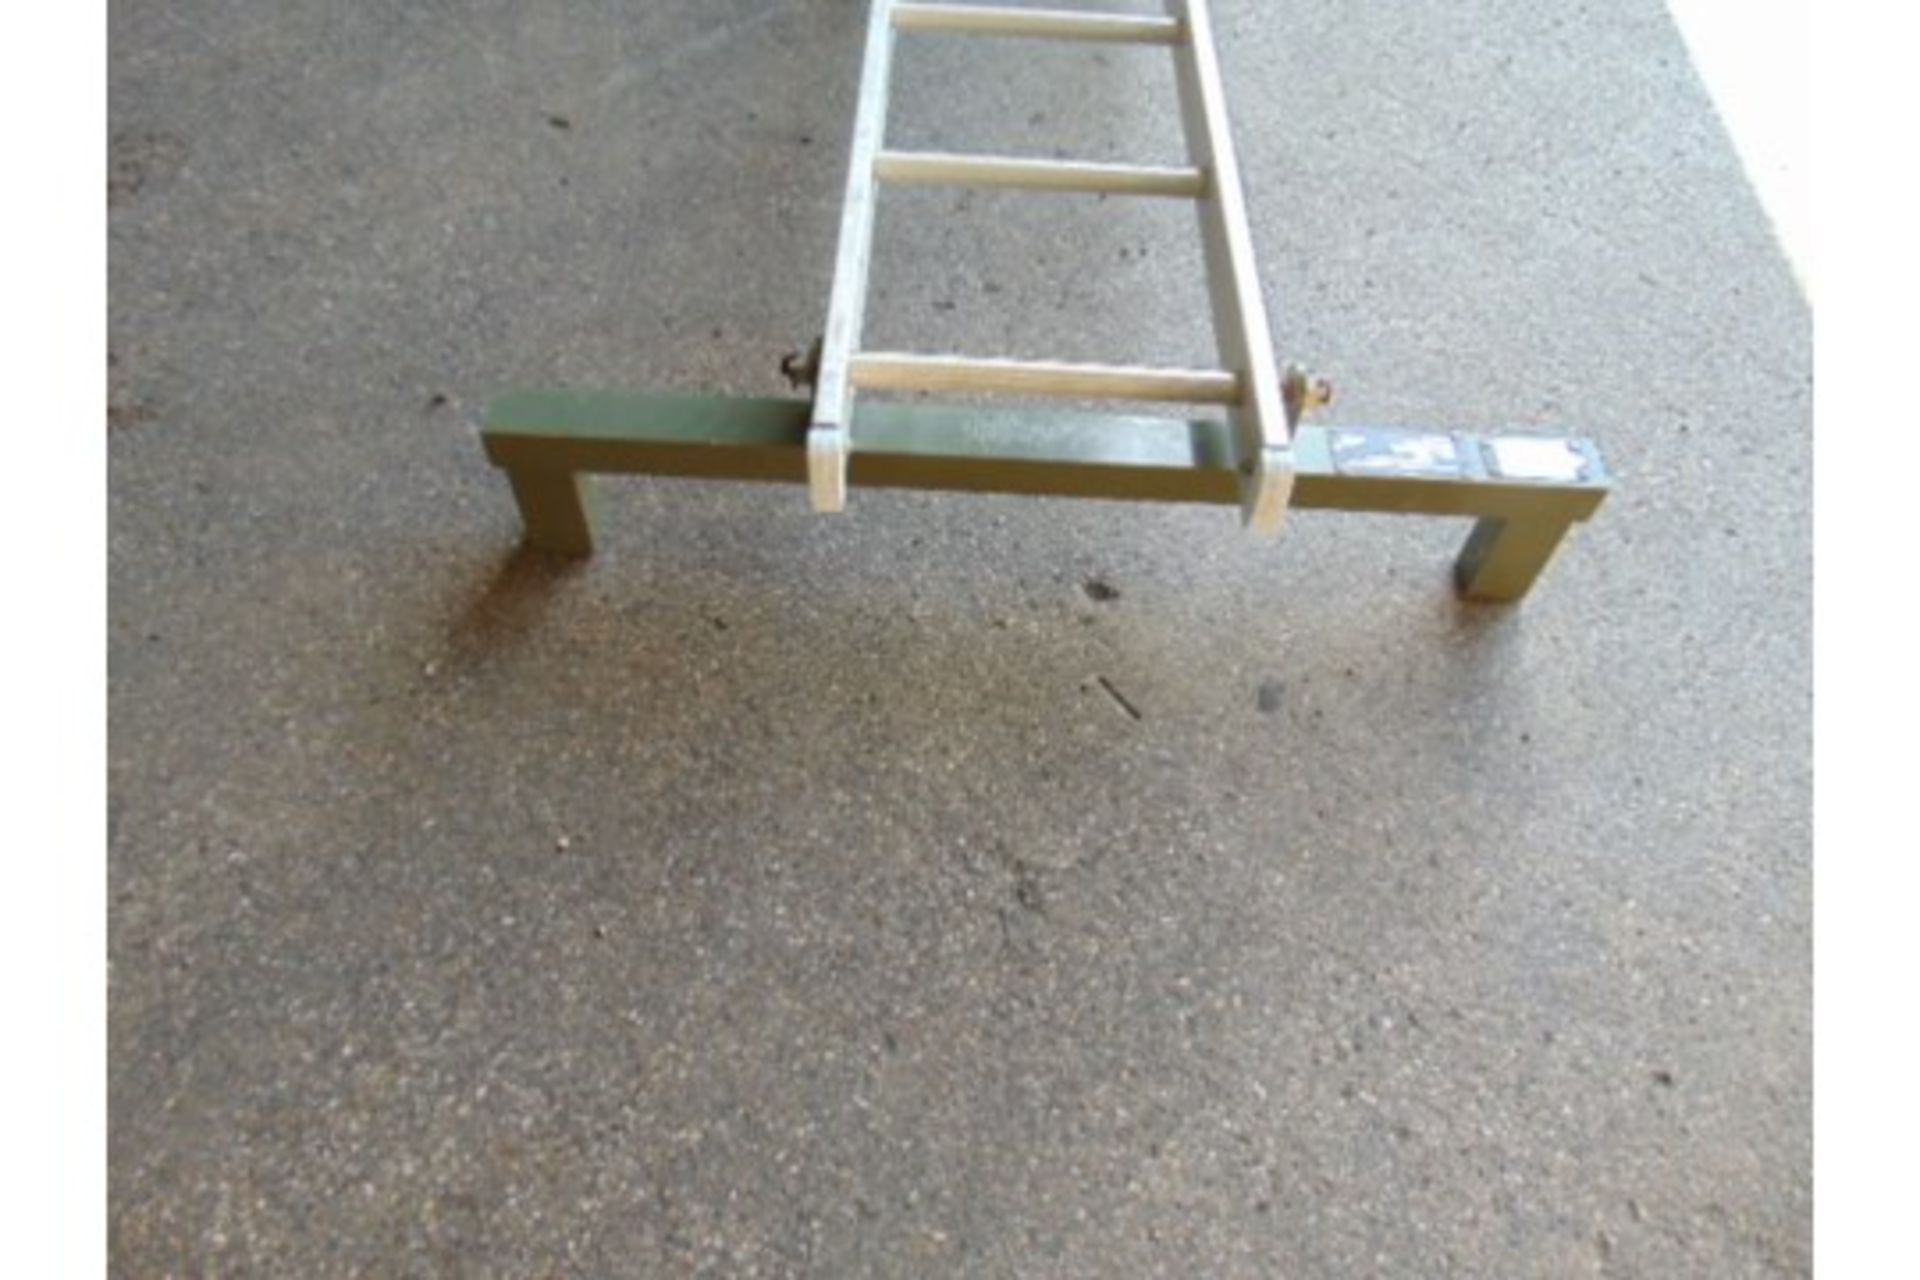 Sidewinder/Sparrow Transportation/Storage Cradle Ladder - Image 4 of 5